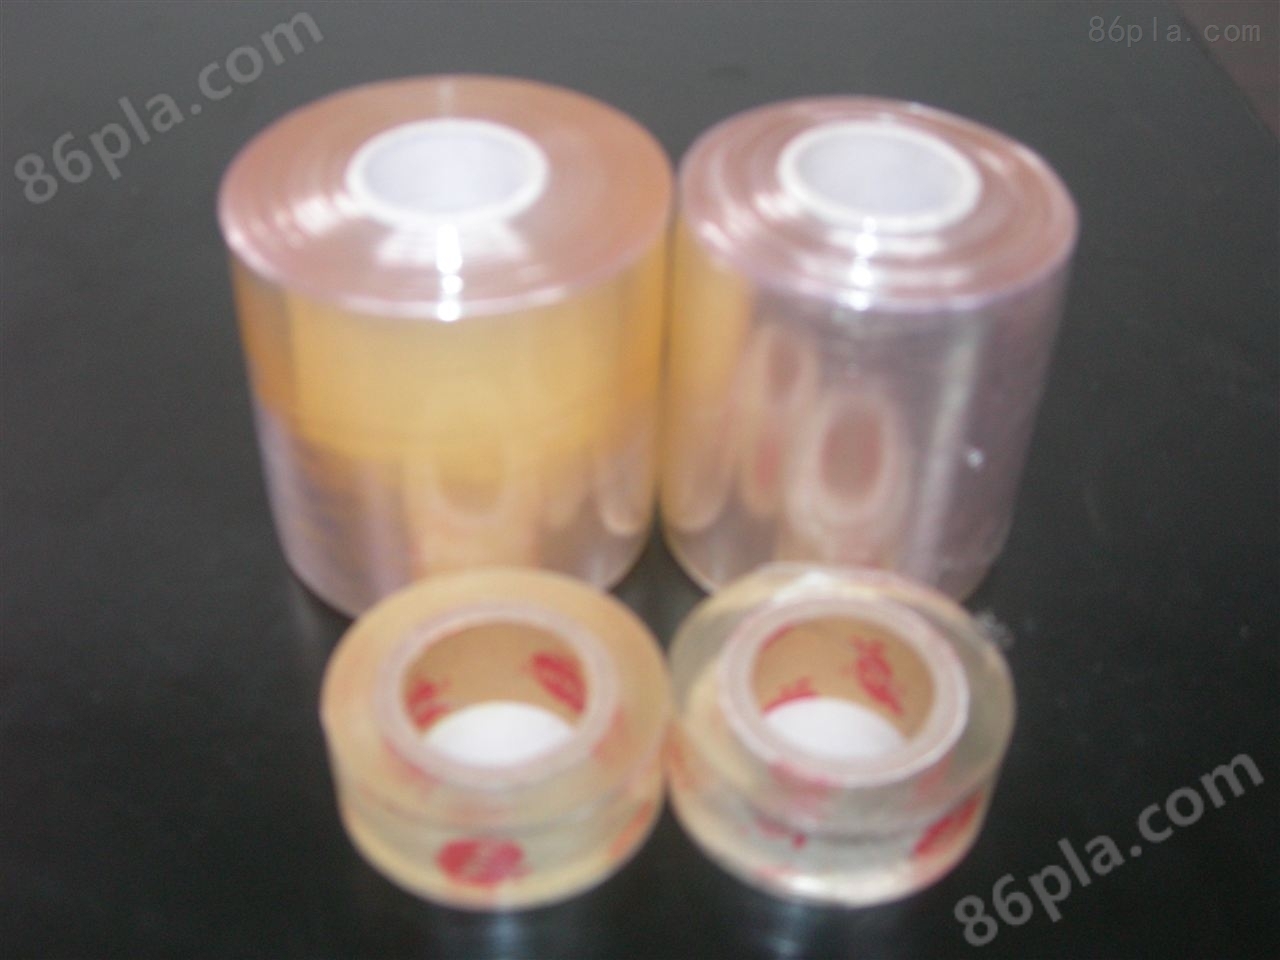 聚氯乙烯（PVC）宽幅包装薄膜